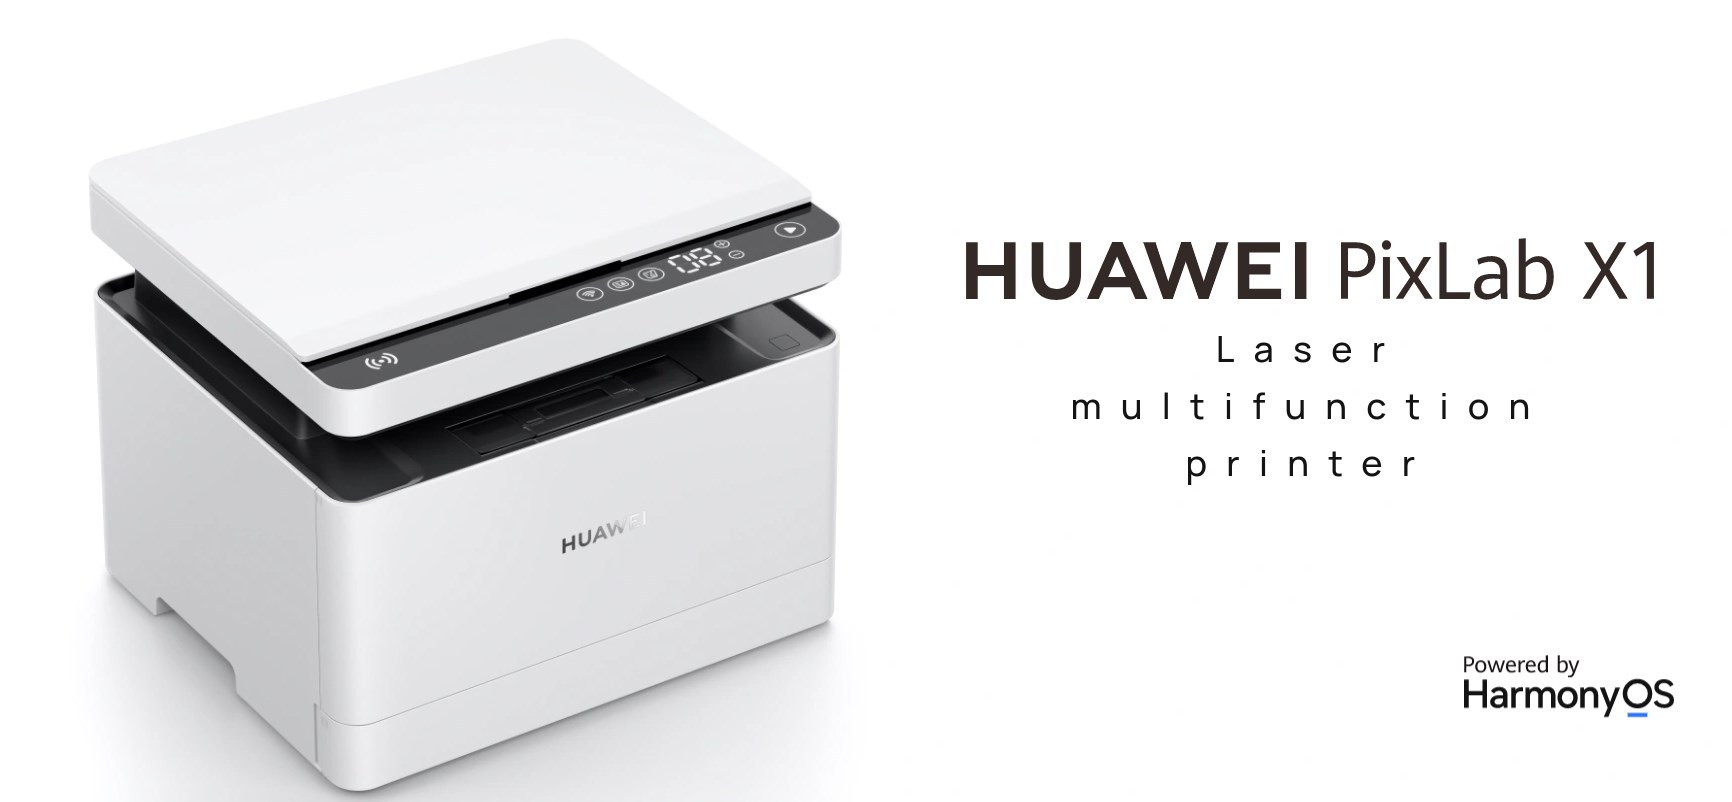 Huawei PixLab X1 tanıtıldı